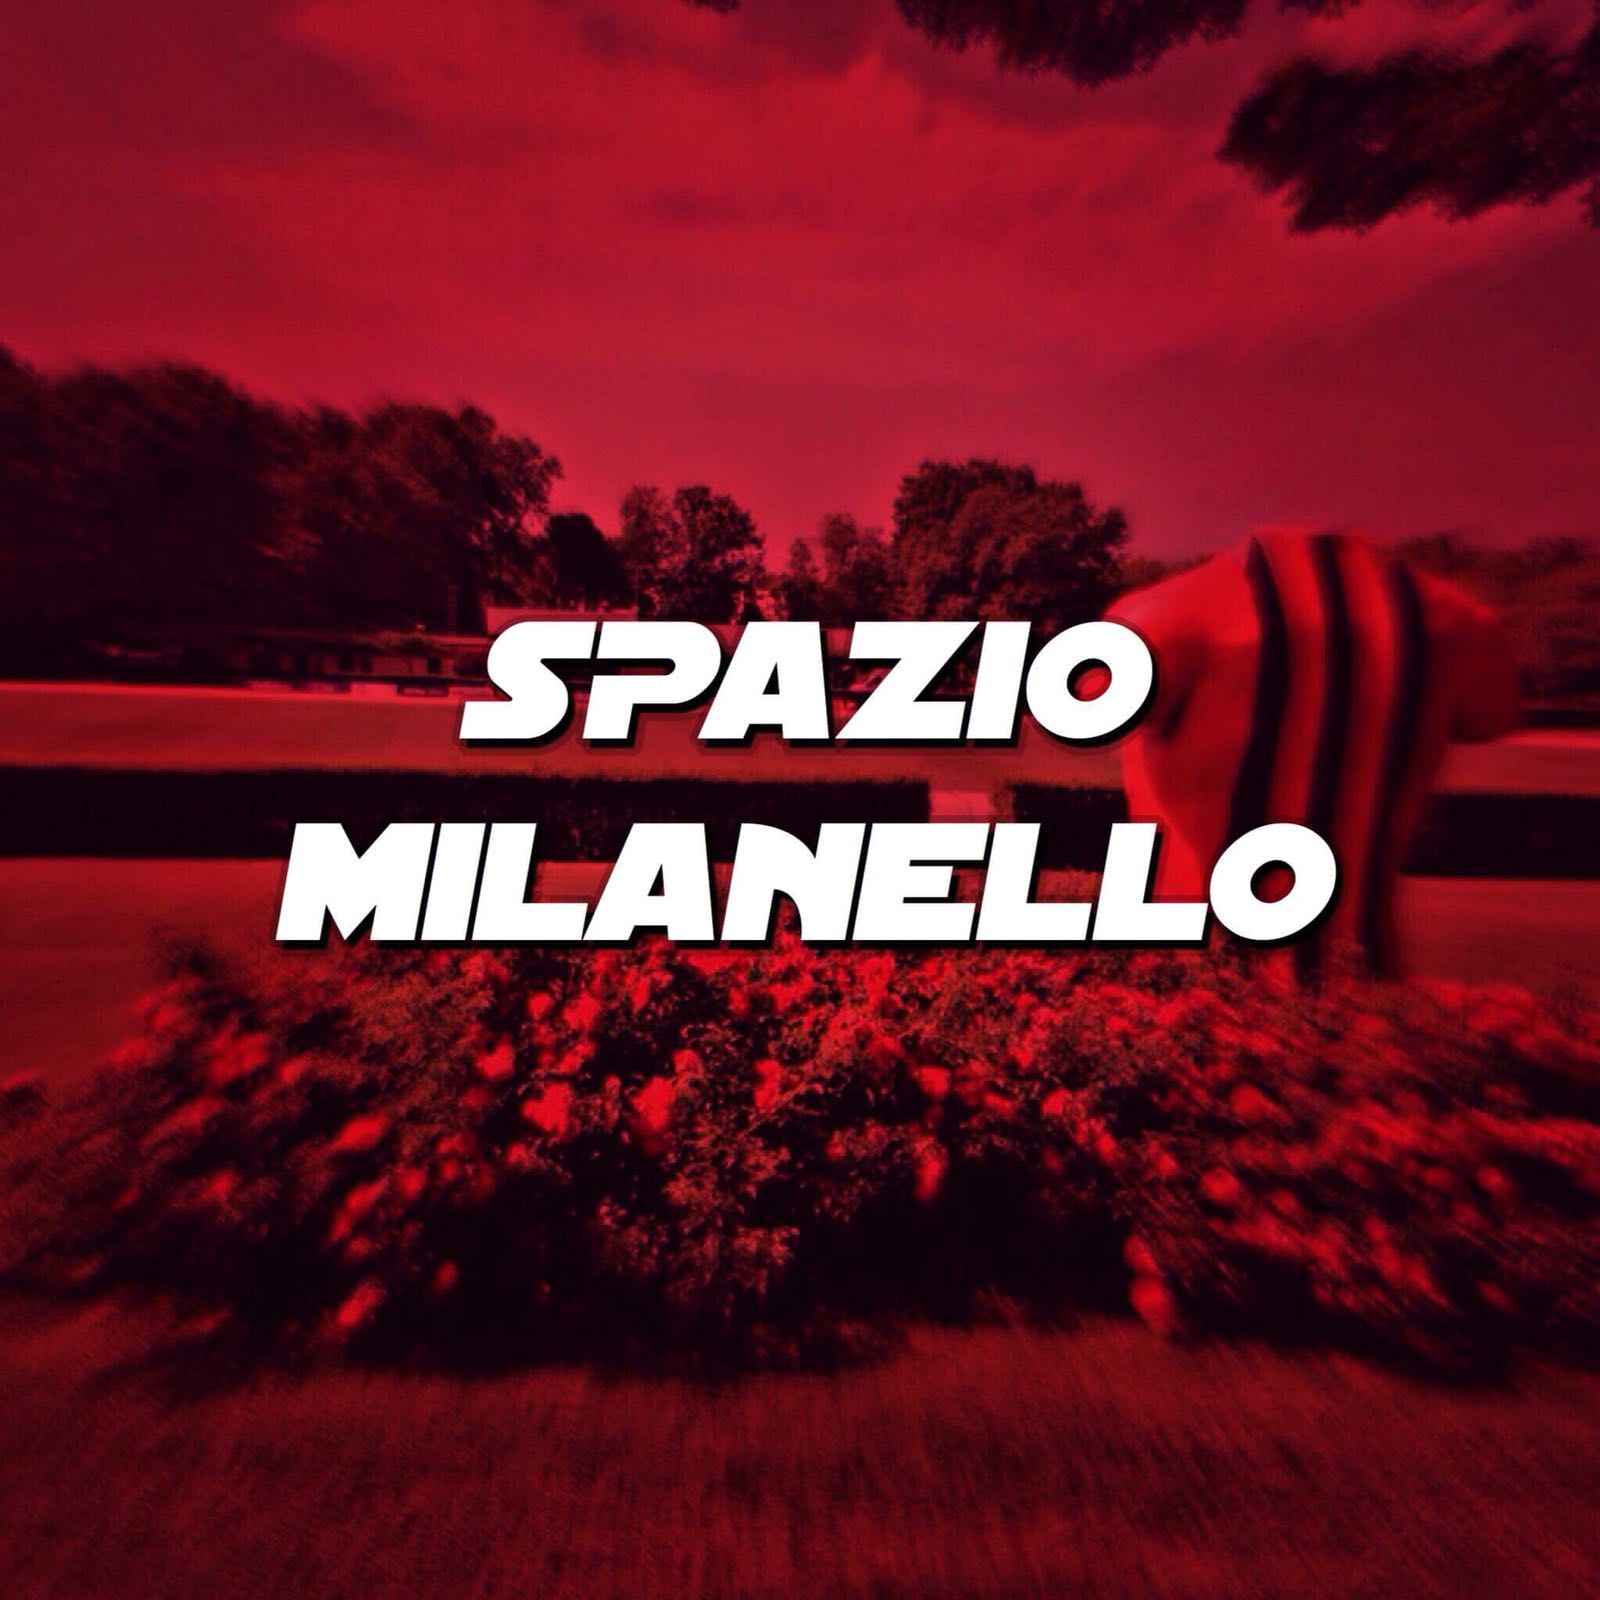 Milan Milanello